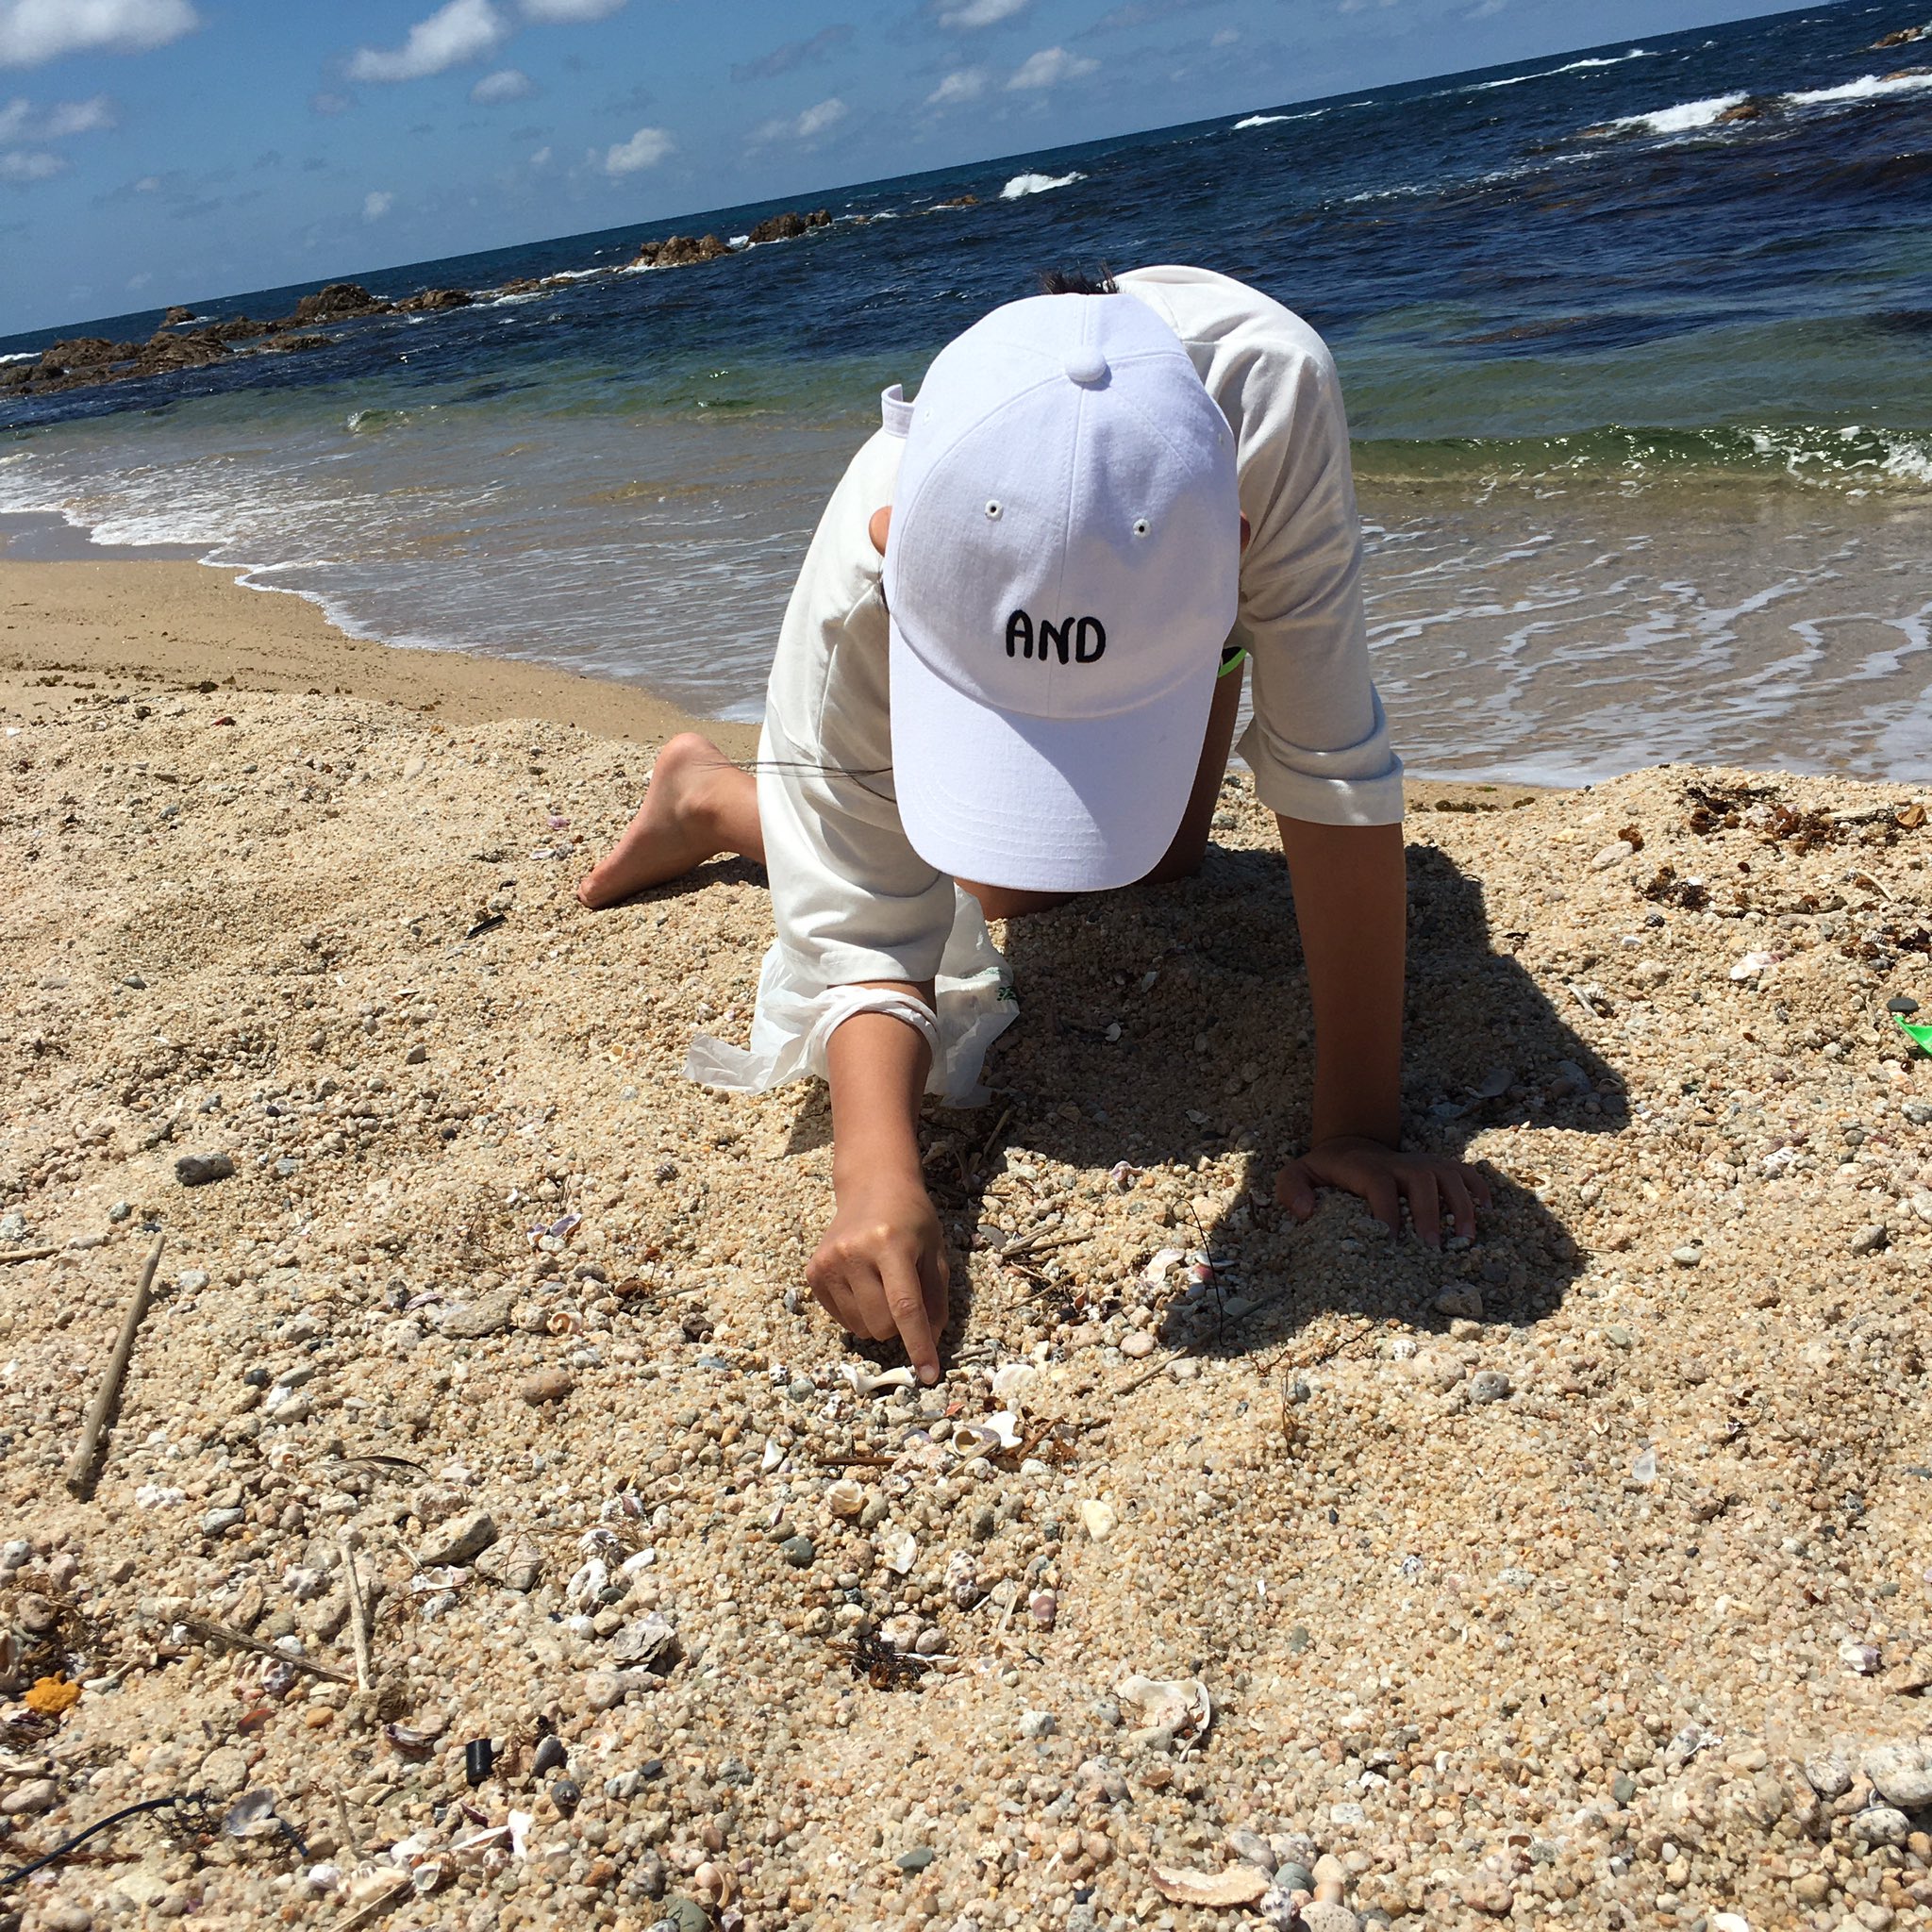 のりたまgo 貝殻拾い 誰もいない貝殻あるあるスポットへ 娘 必死で拾いまくってます笑 海 貝殻ひろい 貝殻 砂浜 T Co Yyamctufm8 Twitter